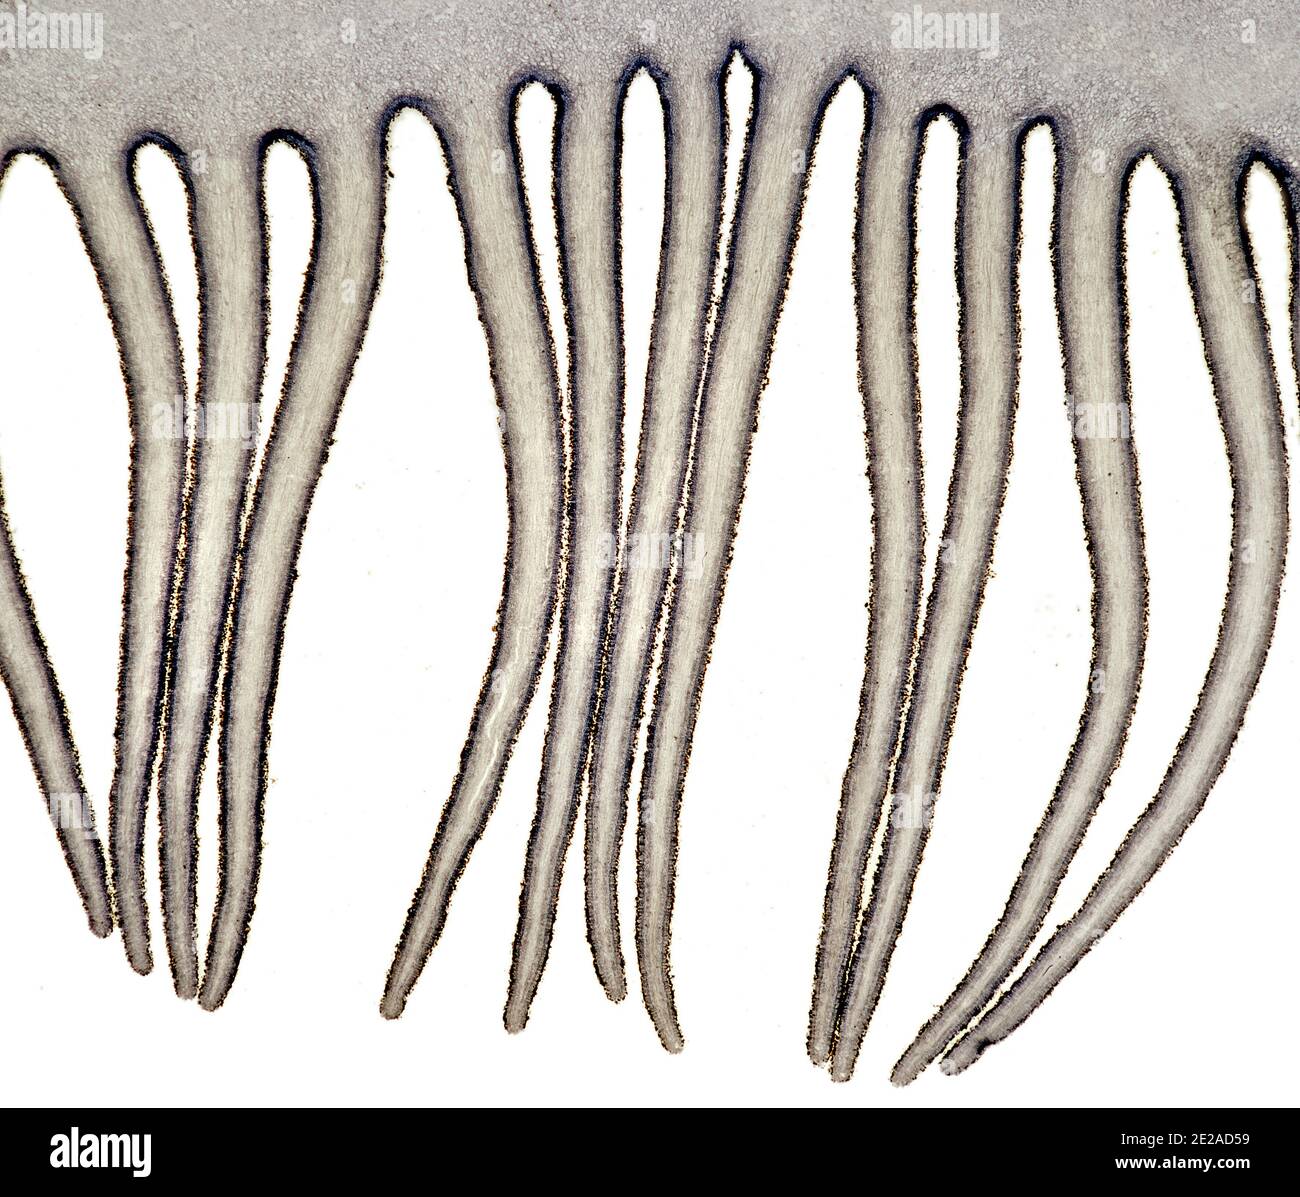 Agaricus pileus (branchie di funghi), ("pulsante") fungo ("Agaricus bisporus") e il fungo di campo ("Agaricus campestris") fotomicrografia a campo chiaro Foto Stock